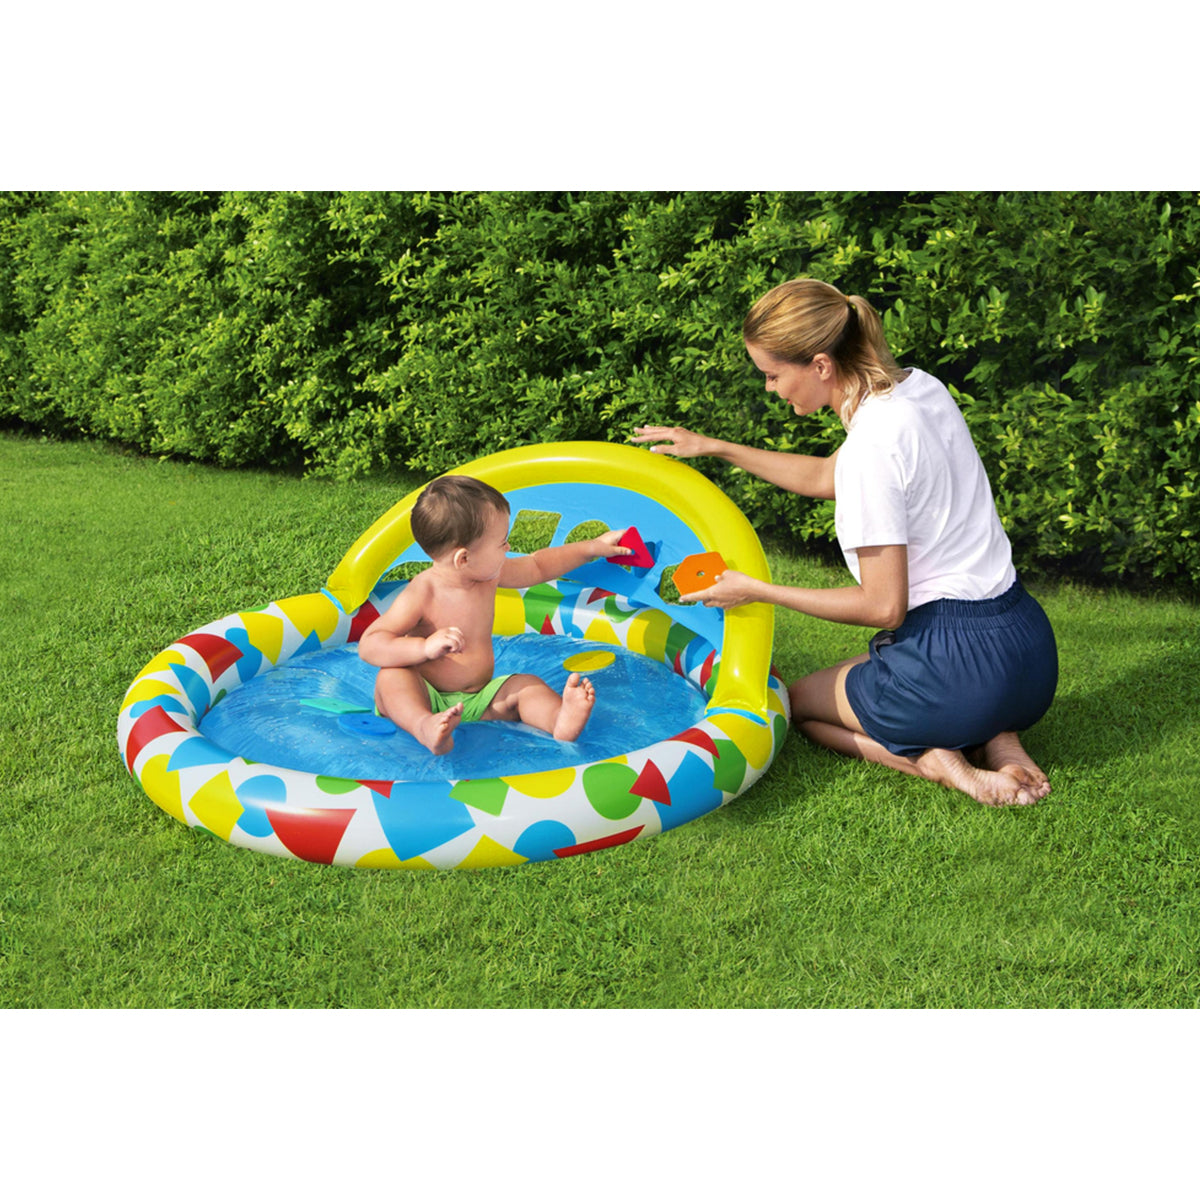 Bestway - Splash & Learn Inflatable Kiddie Pool 52378